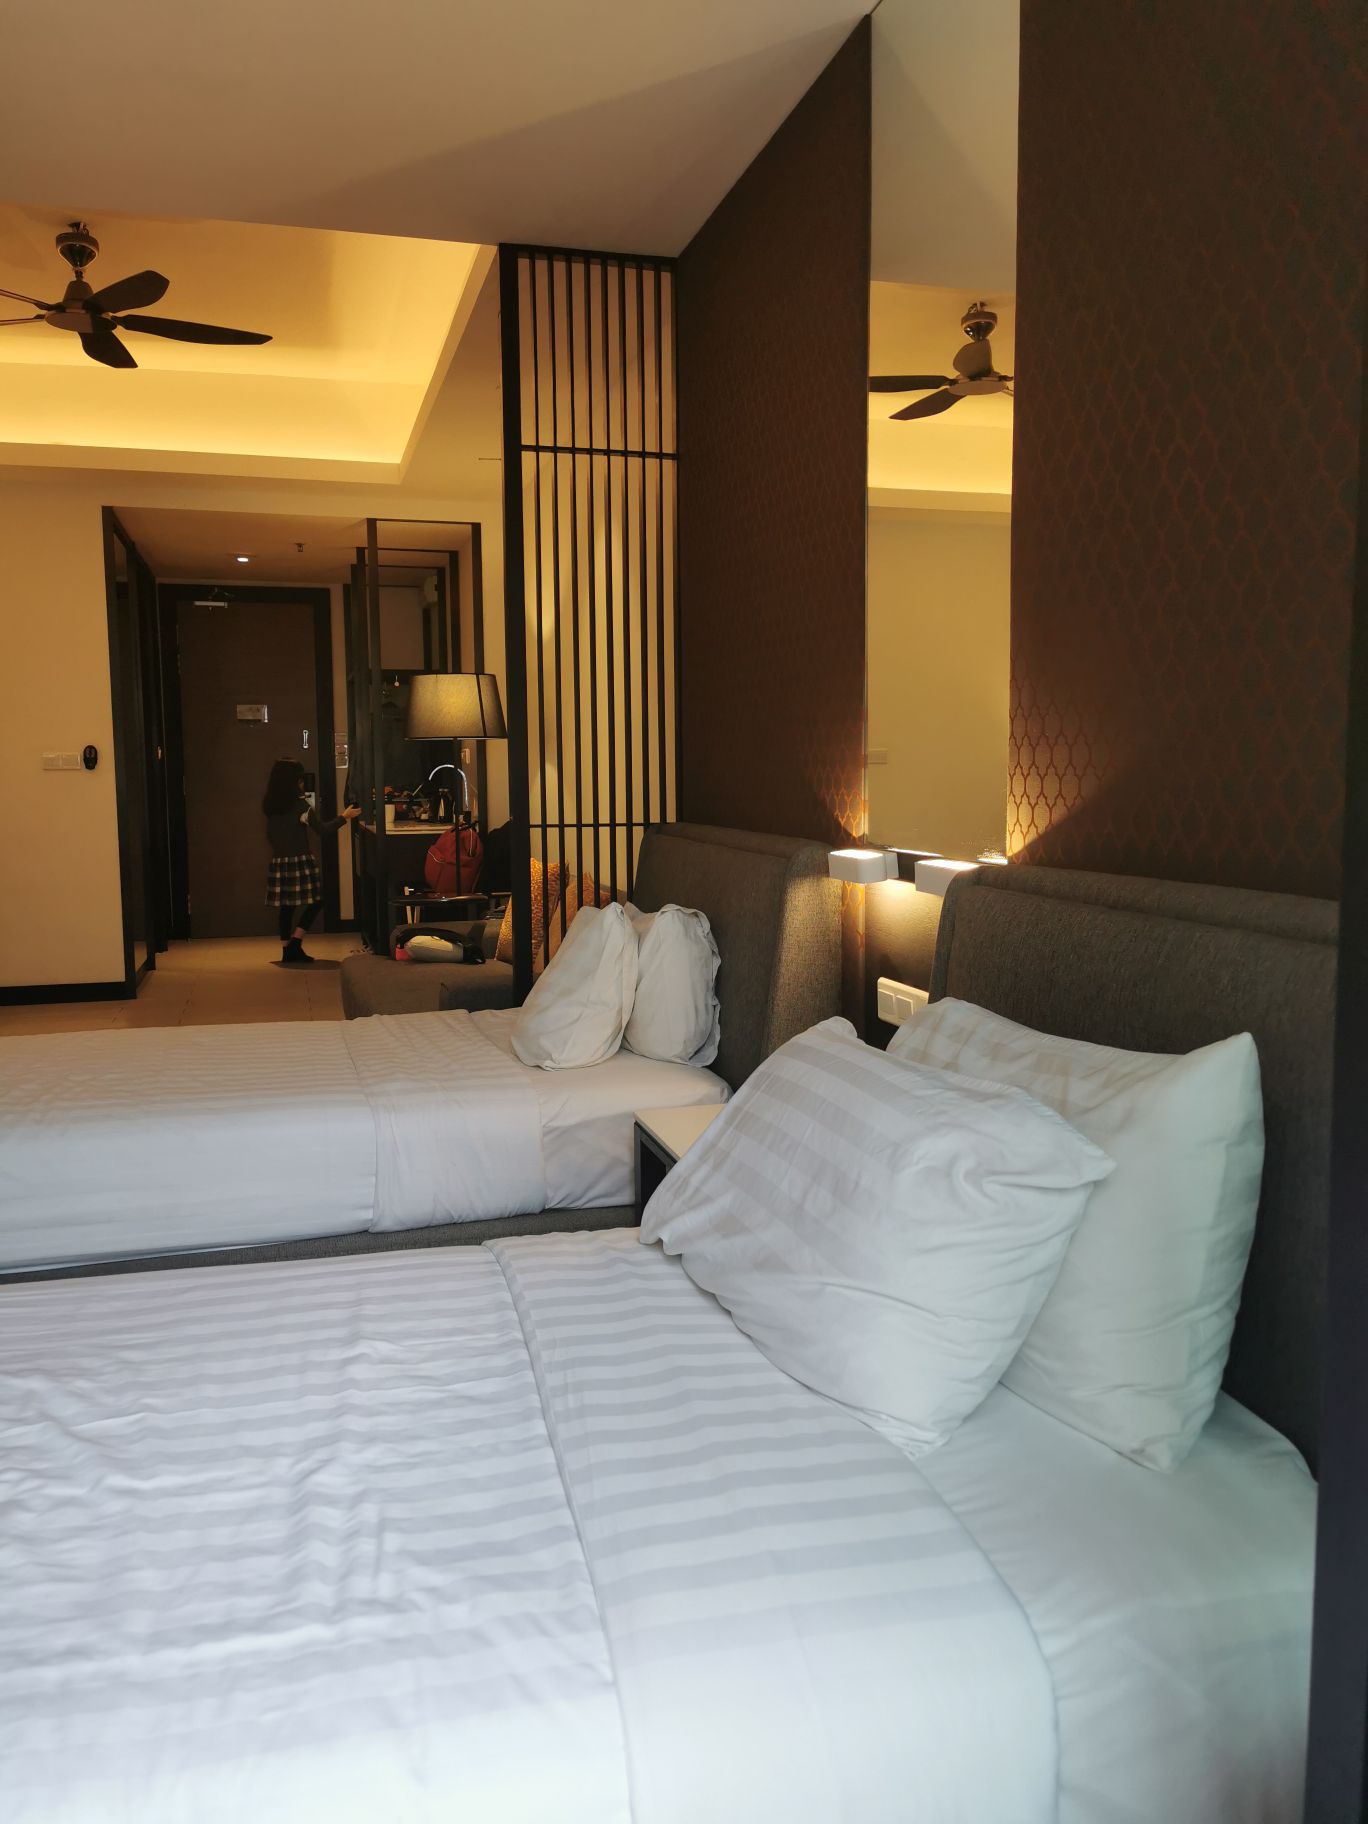 新开的一间酒店，金马伦多数酒店都非常老式又贵，反而这间酒店比较简约舒适大间，虽然是遇到马来西亚假期，